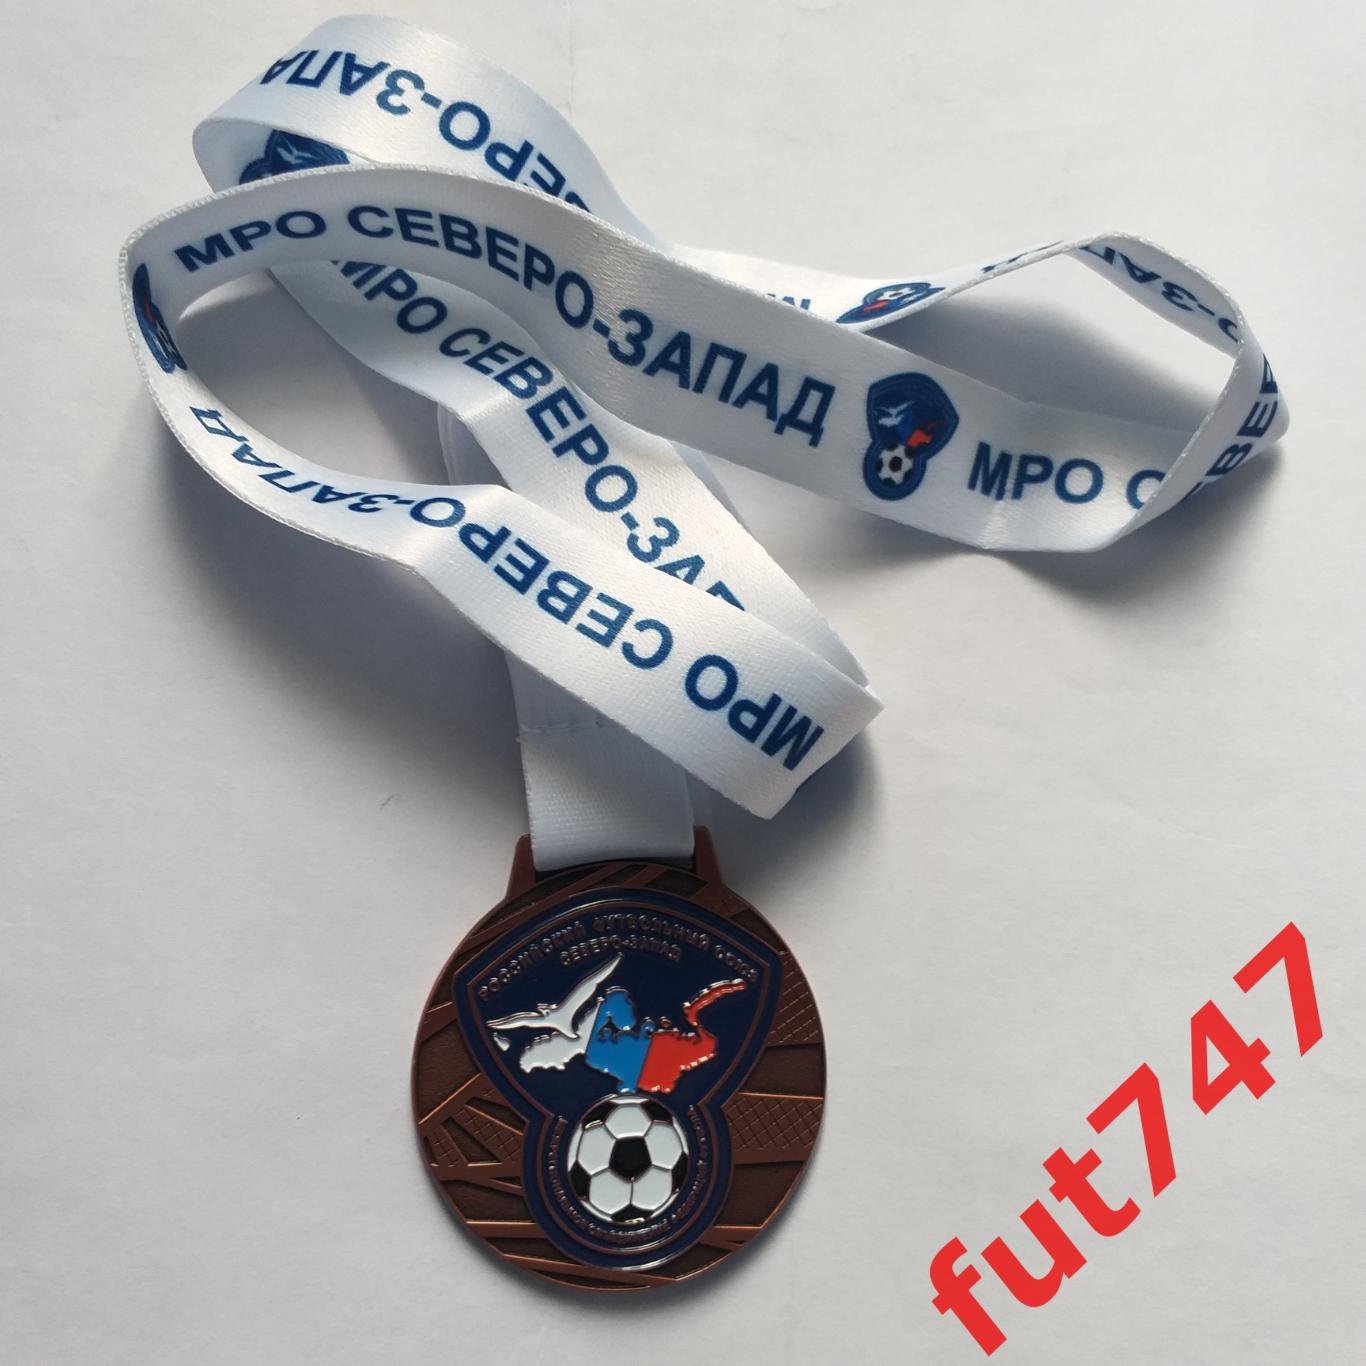 футбольная медаль МРО Северо-Запад 1